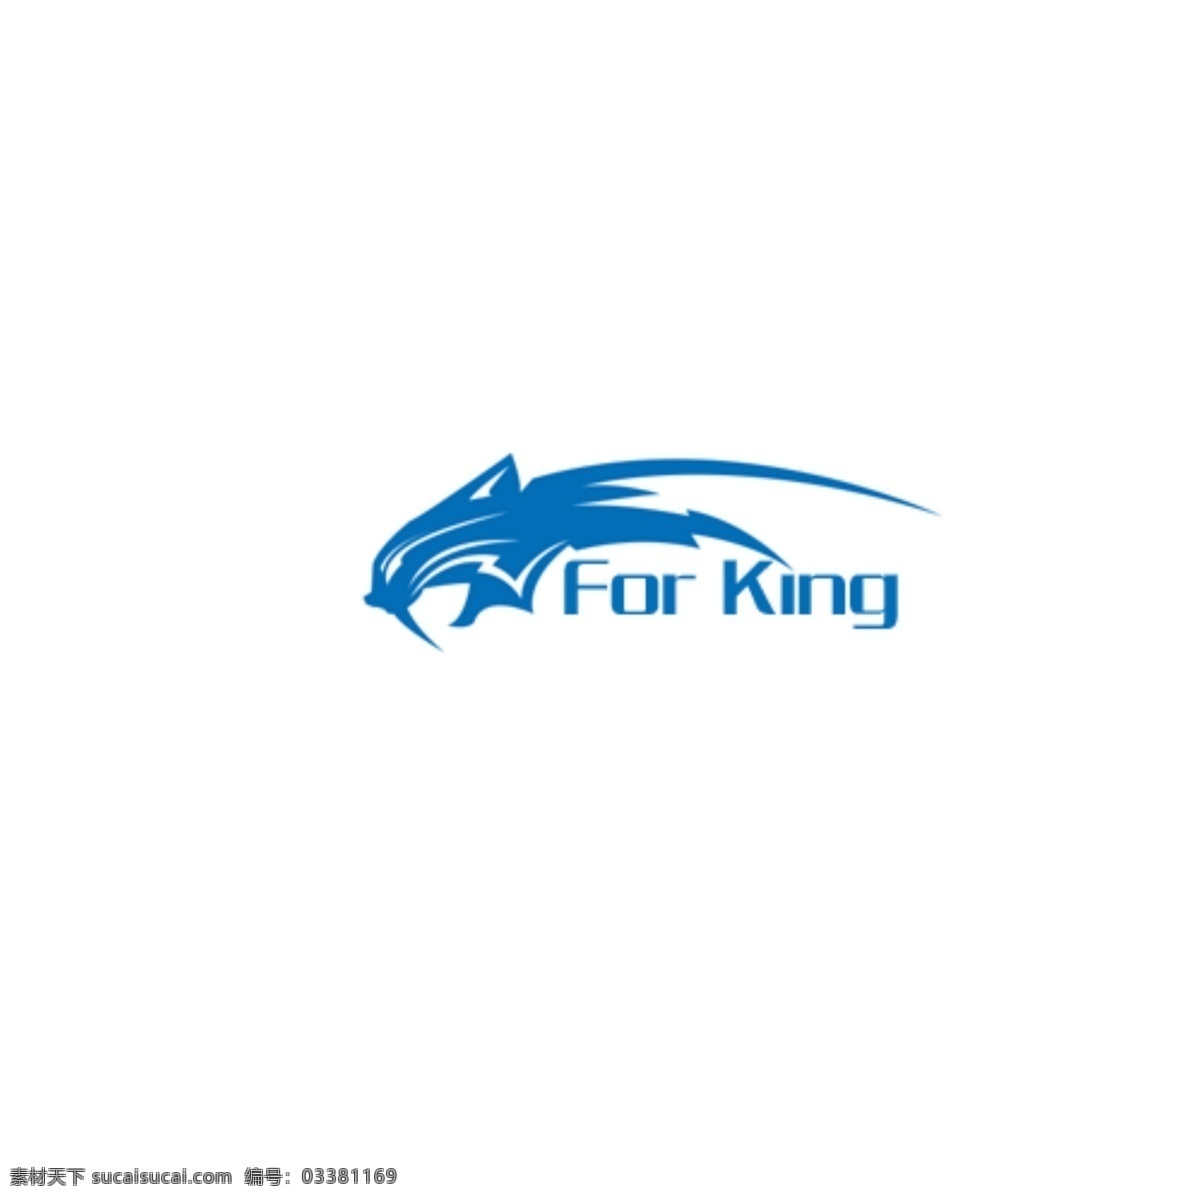 队徽 logo 图标 china 丶 fj 淘宝素材 淘宝设计 淘宝模板下载 白色